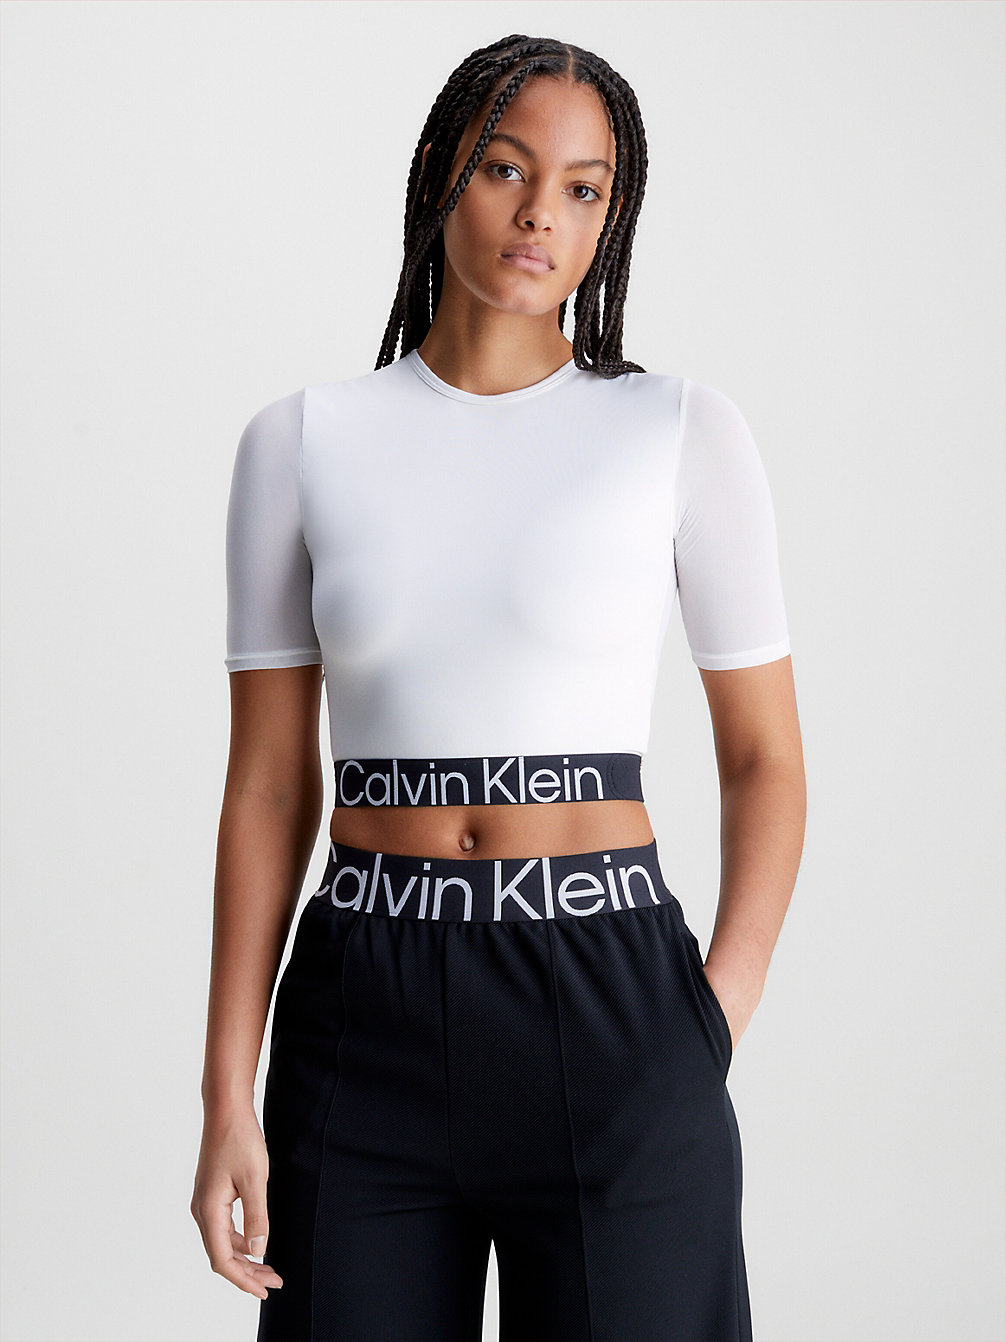 BRIGHT WHITE Cropped Gym T-Shirt undefined women Calvin Klein